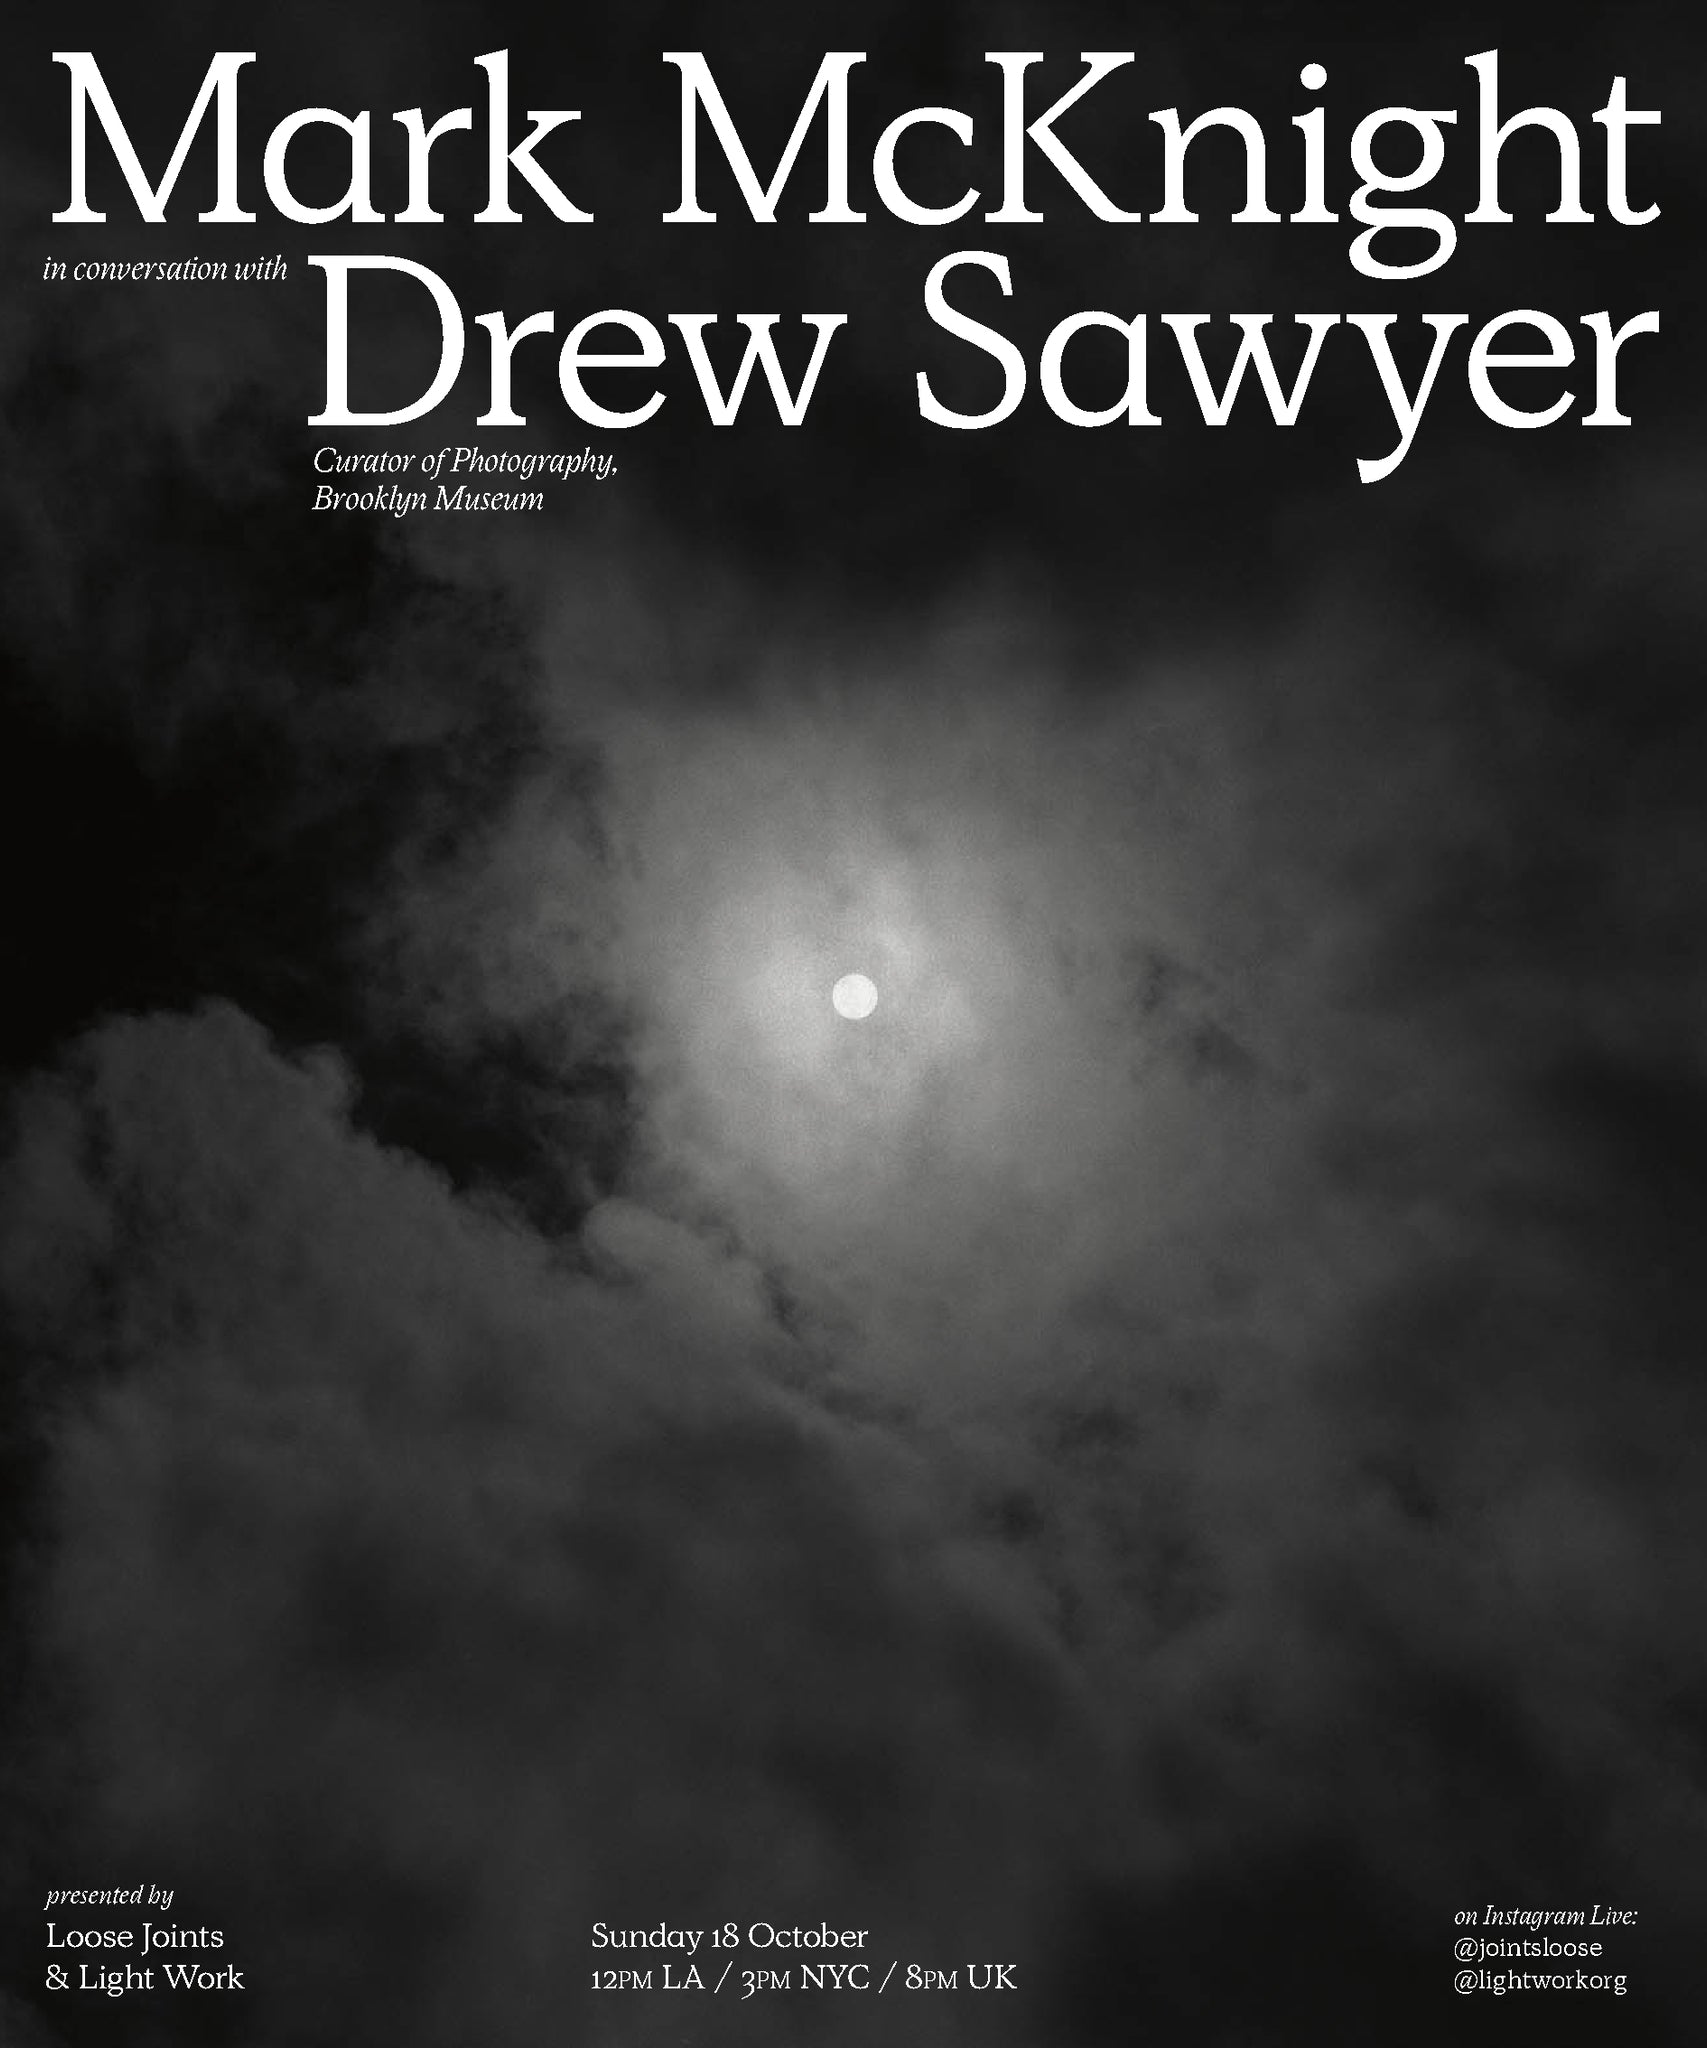 Mark McKnight in conversation with Drew Sawyer, Sun 18 October